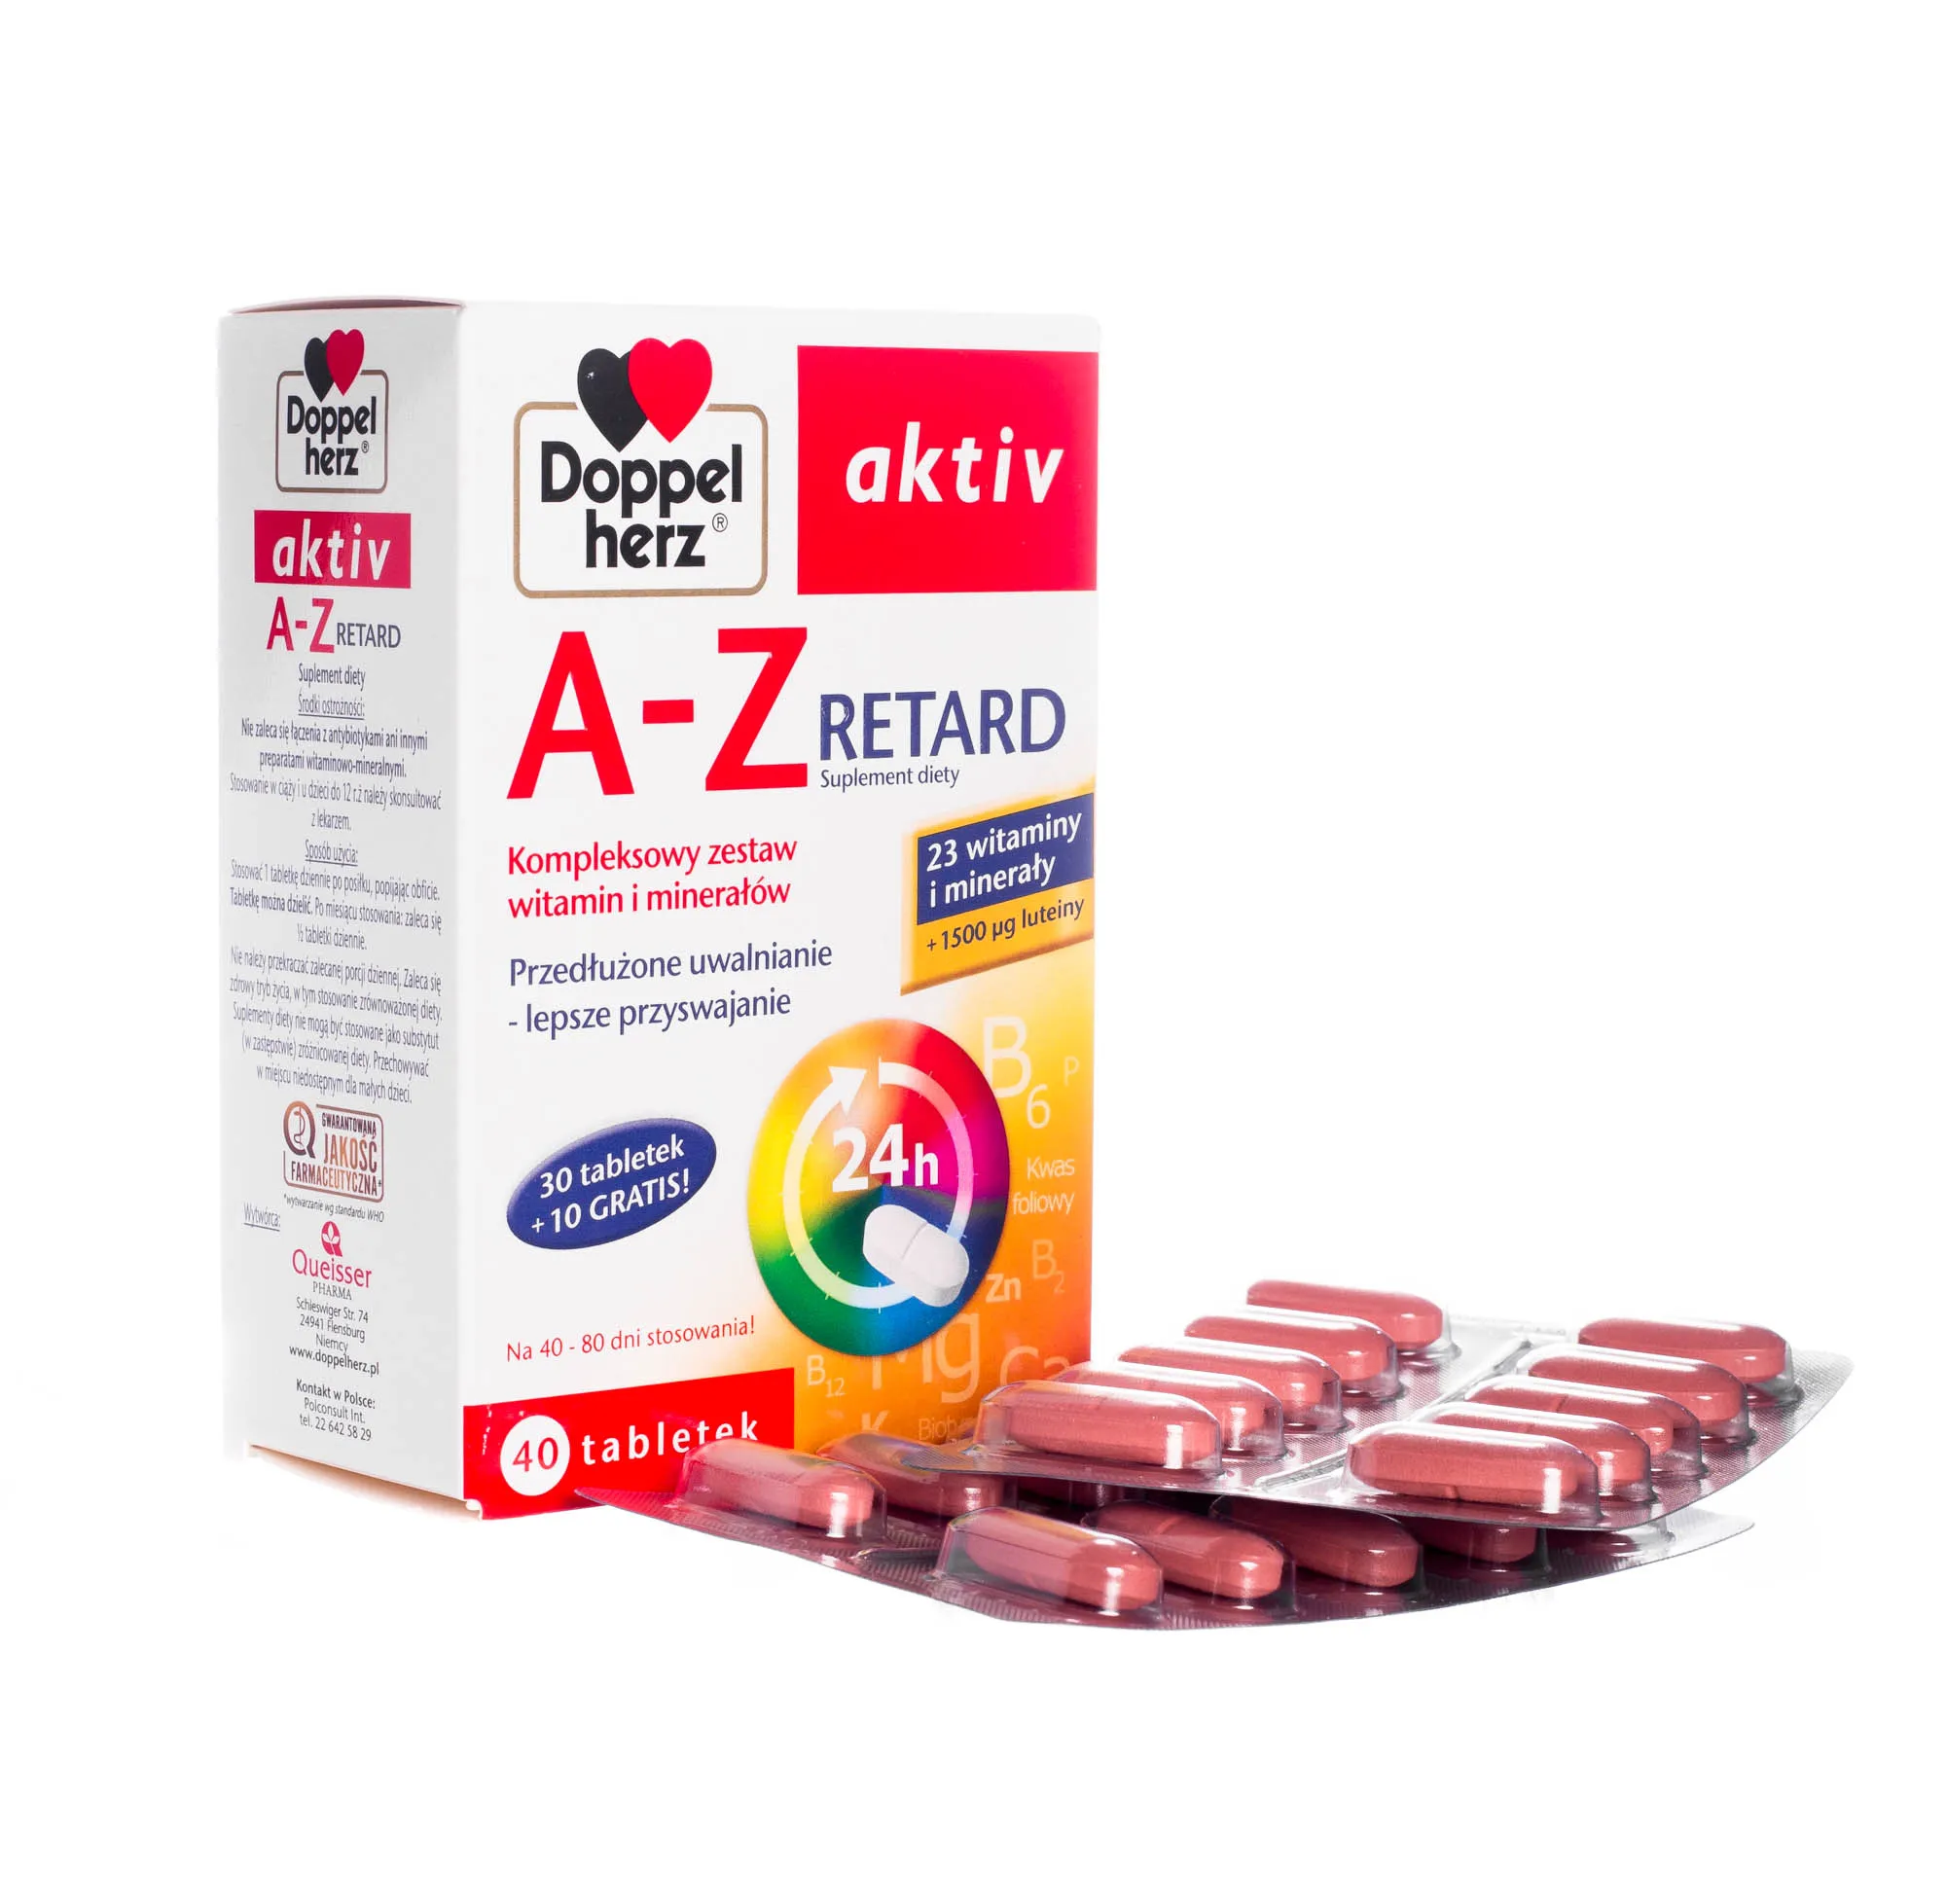 Doppelherz Aktiv A-Z Retard - suplement diety zawierający kompleksowy zestaw witamin i minerałów, 40 tabletek